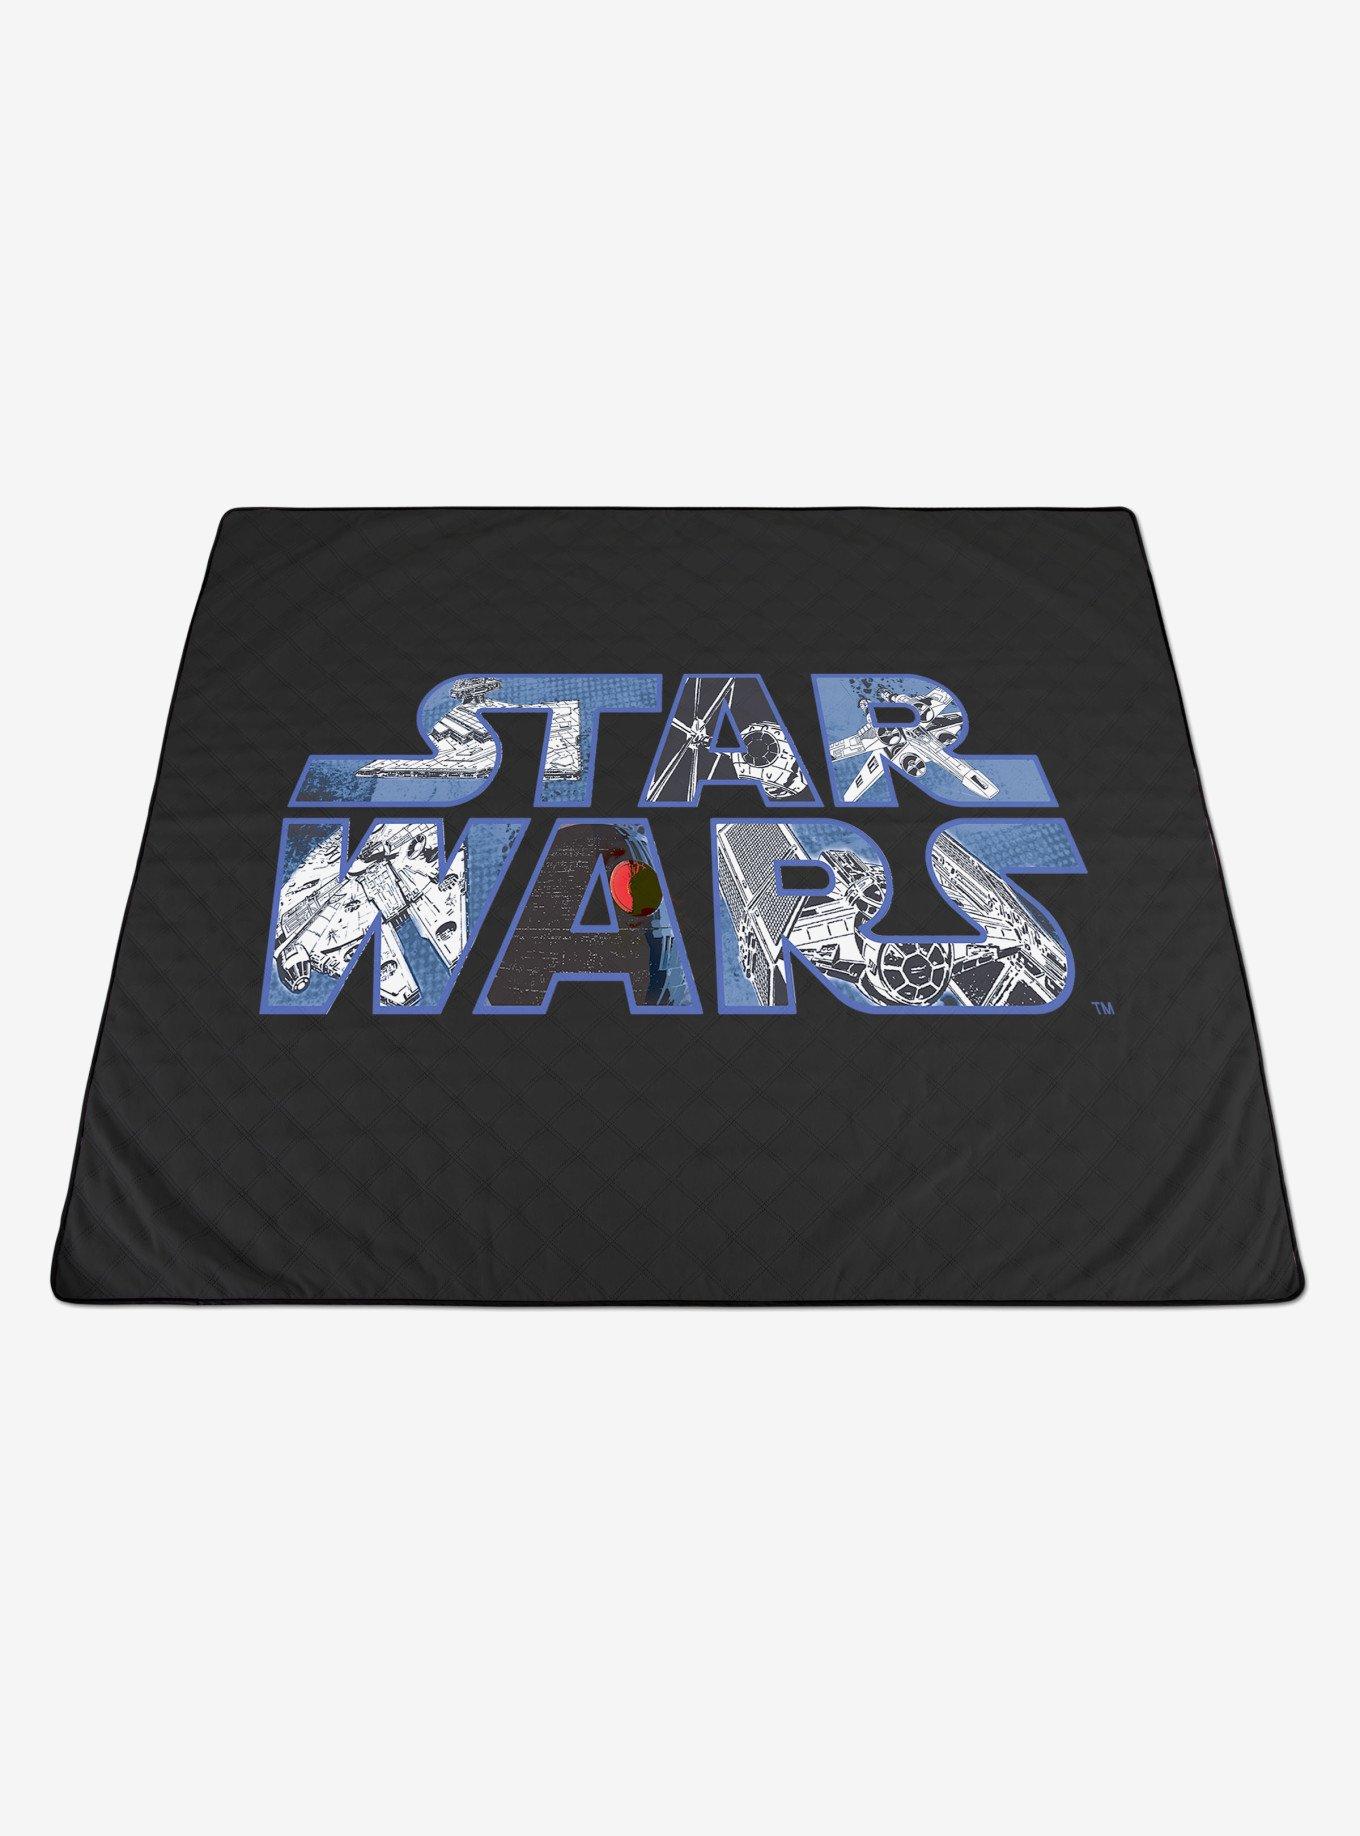 Star Wars Impresa Picnic Blanket